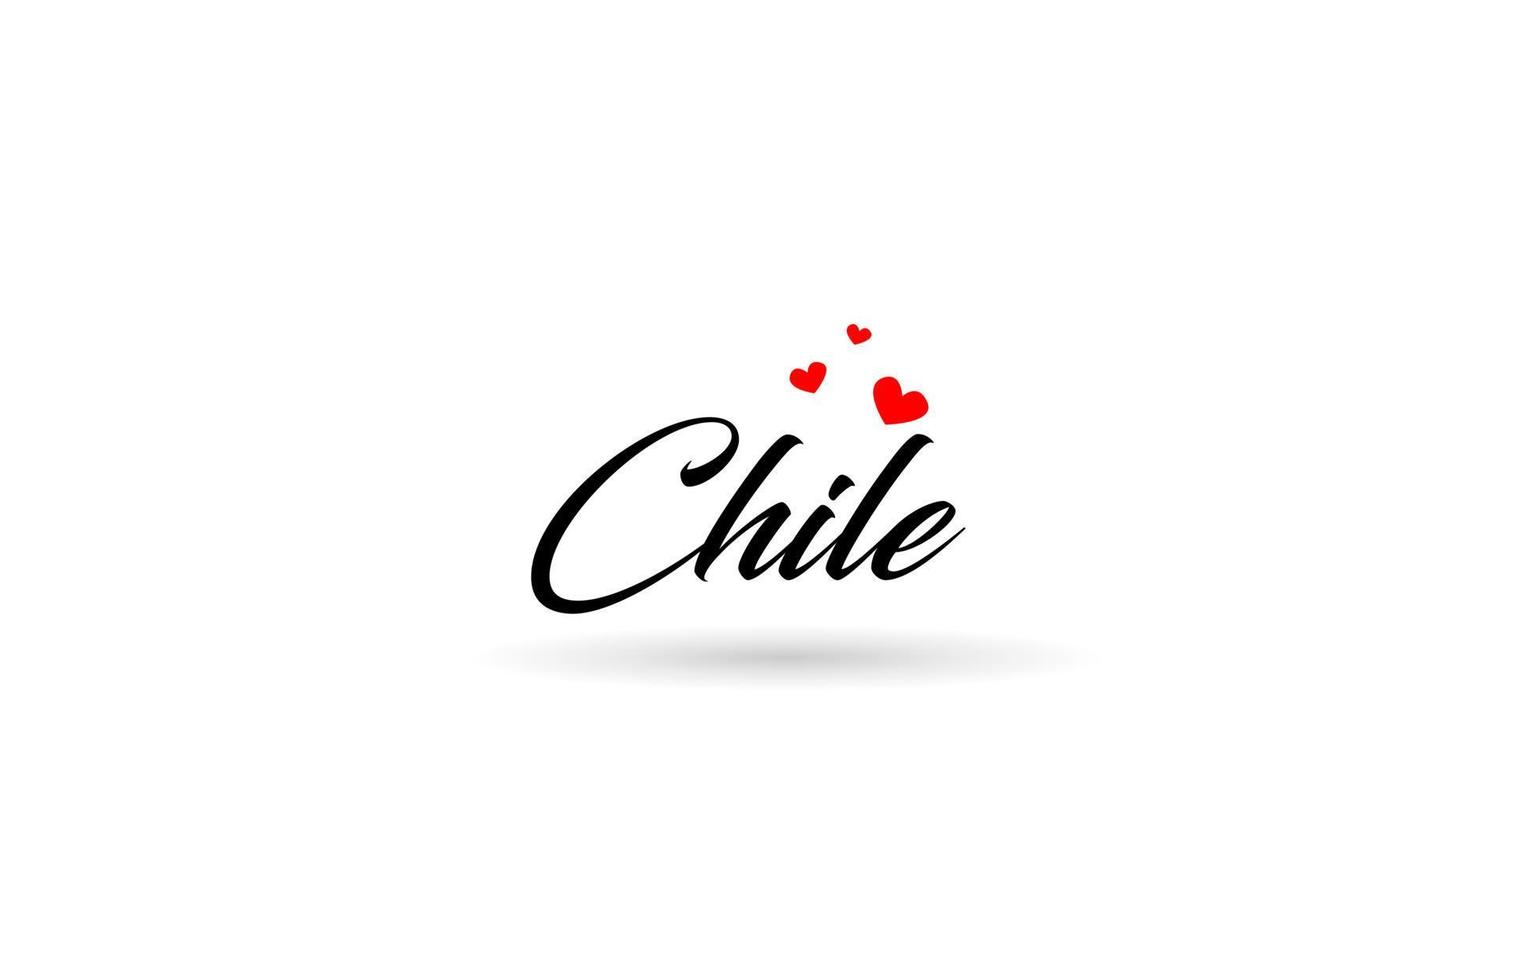 chile namn Land ord med tre röd kärlek hjärta. kreativ typografi logotyp ikon design vektor